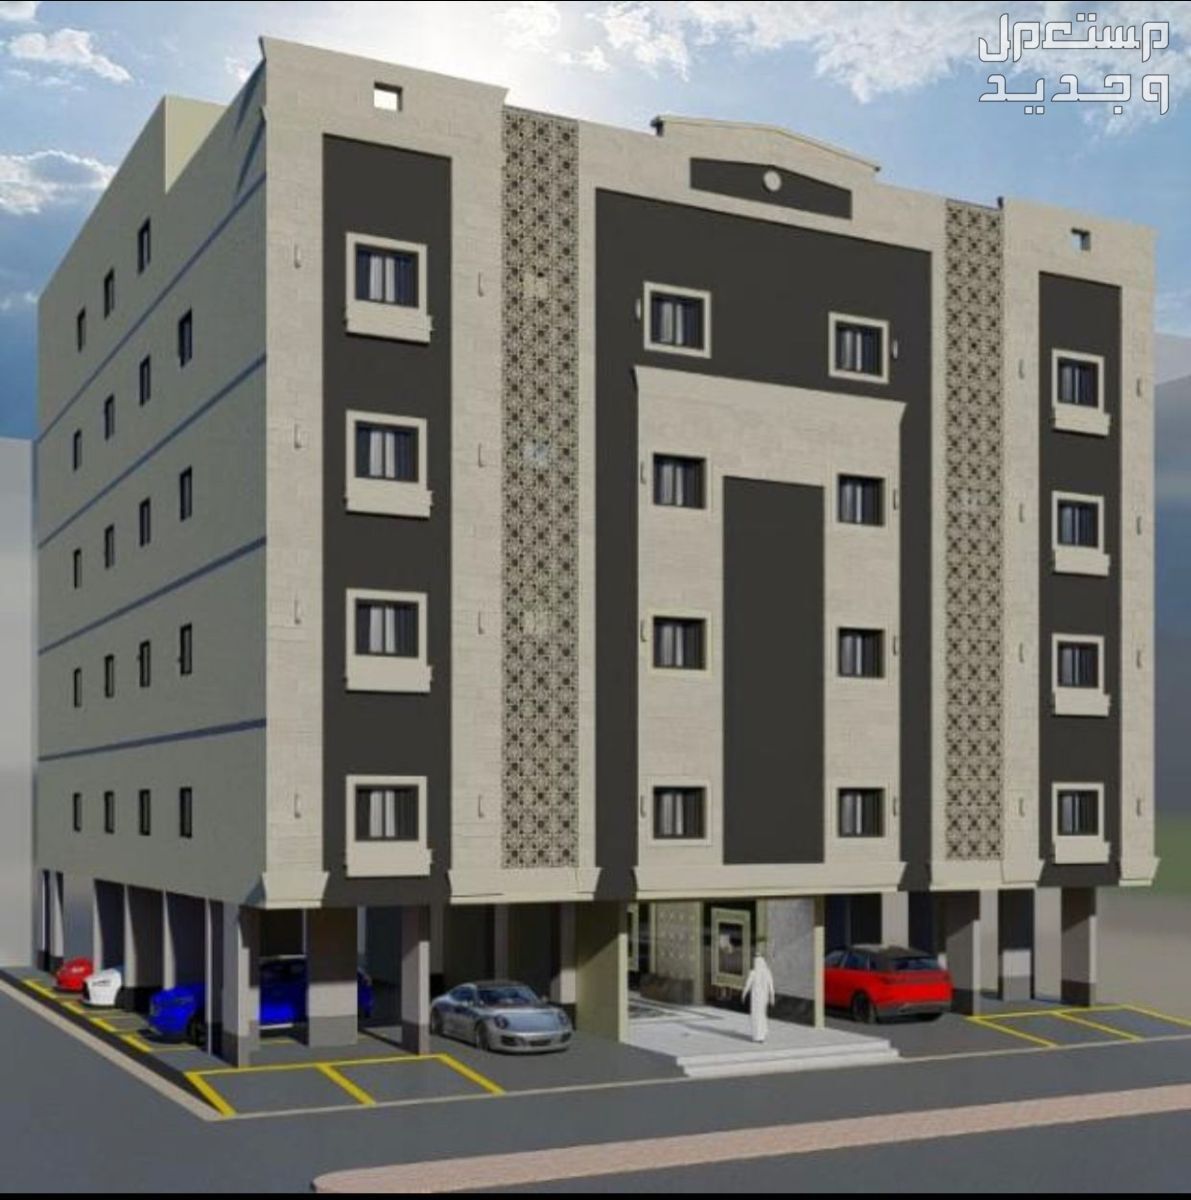 شقة 5 غرف أمامية بمدخلين جديدة جاهزة للسكن تقبل البنك من المالك مباشرة